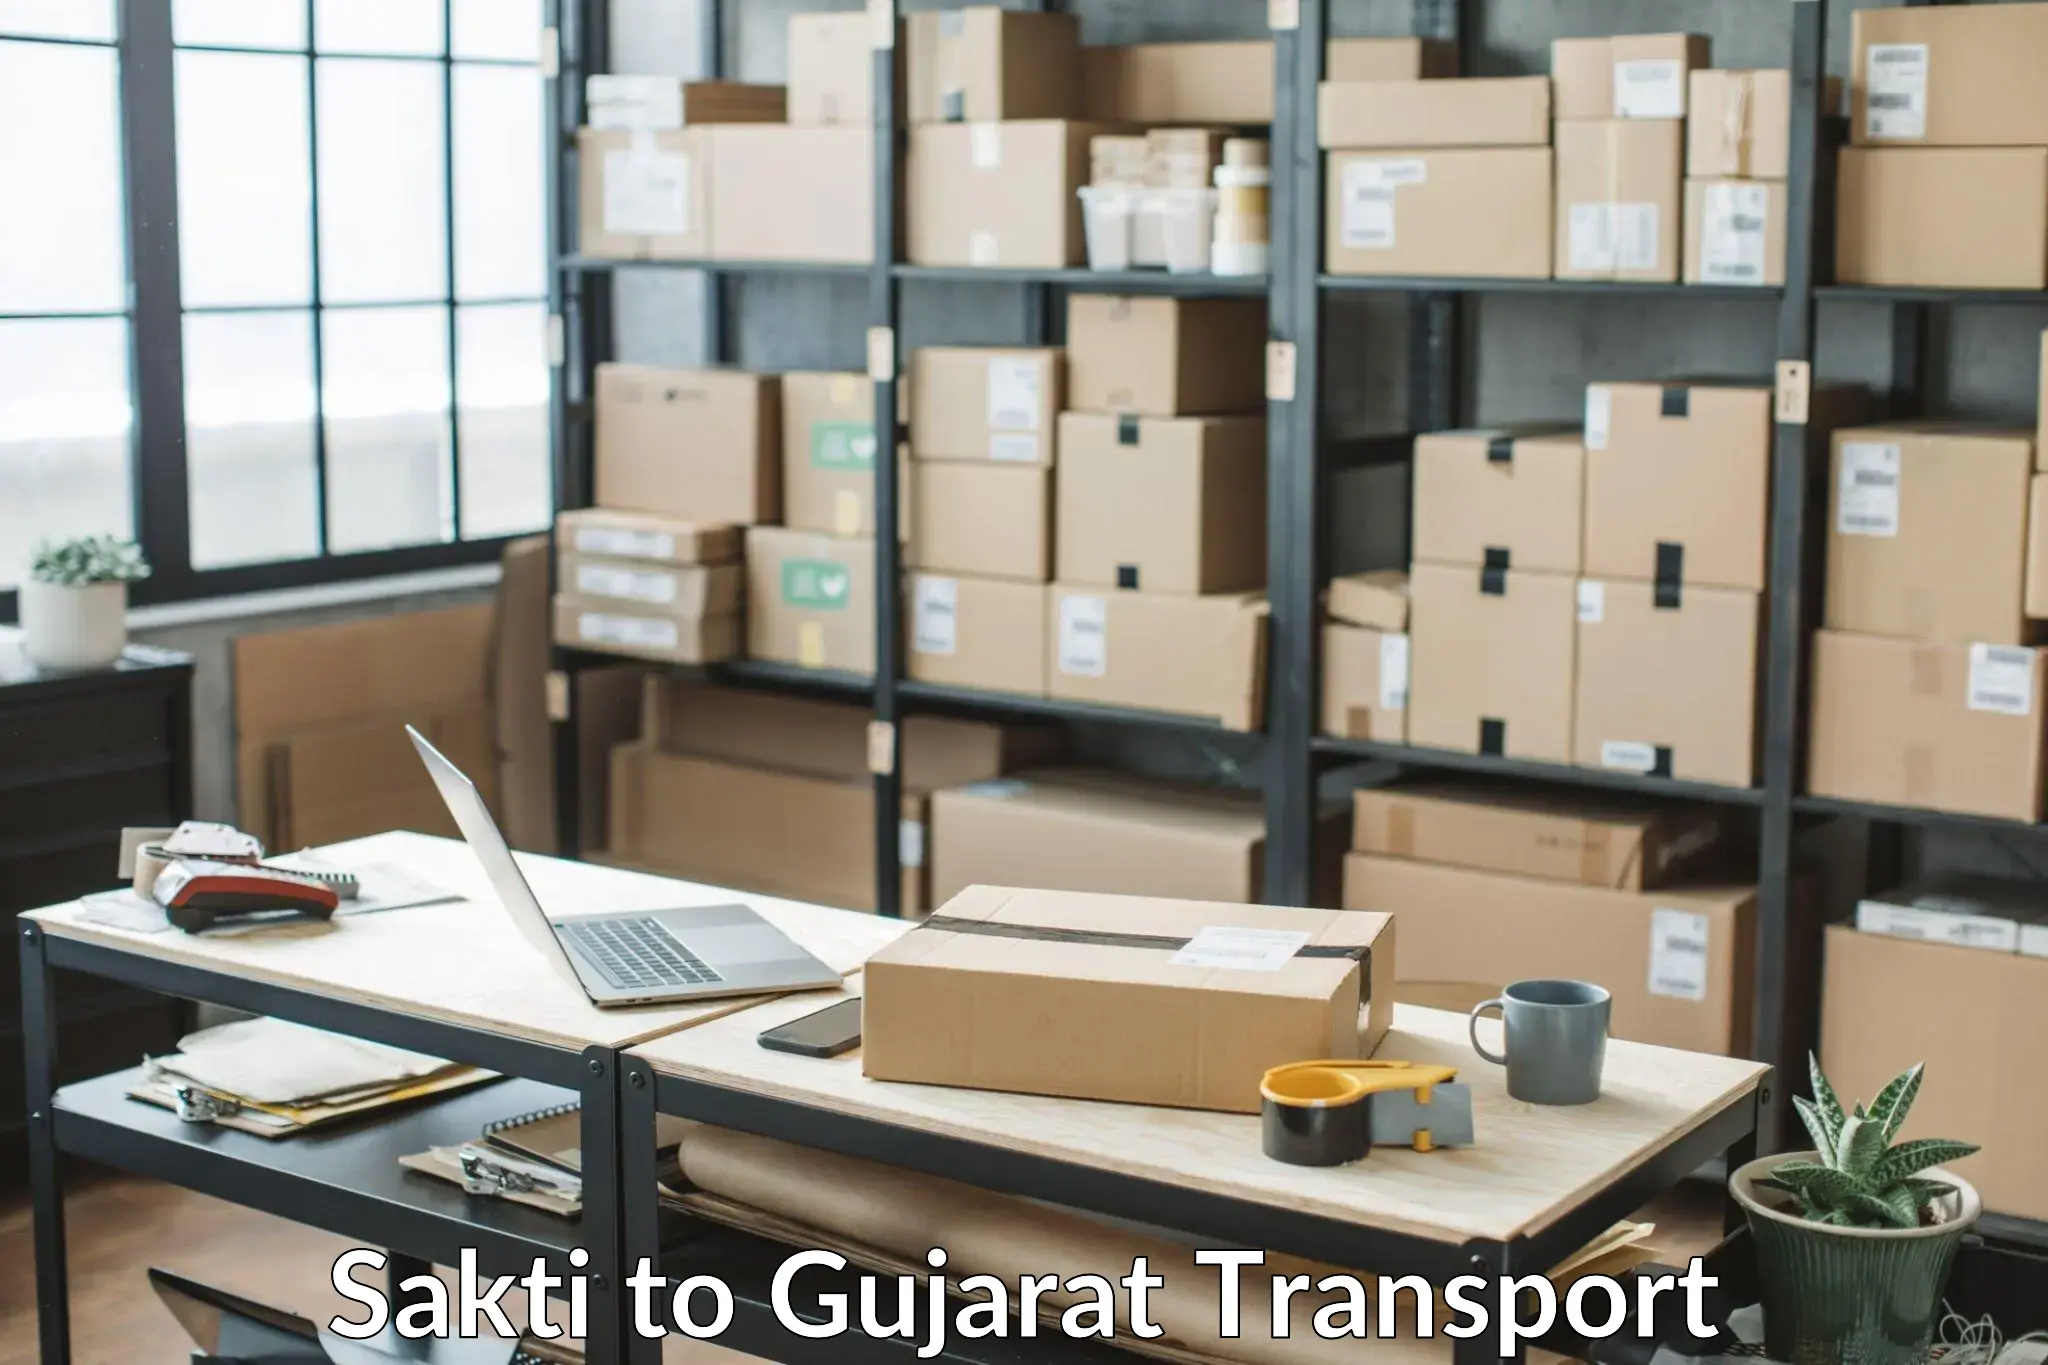 Pick up transport service Sakti to Gujarat